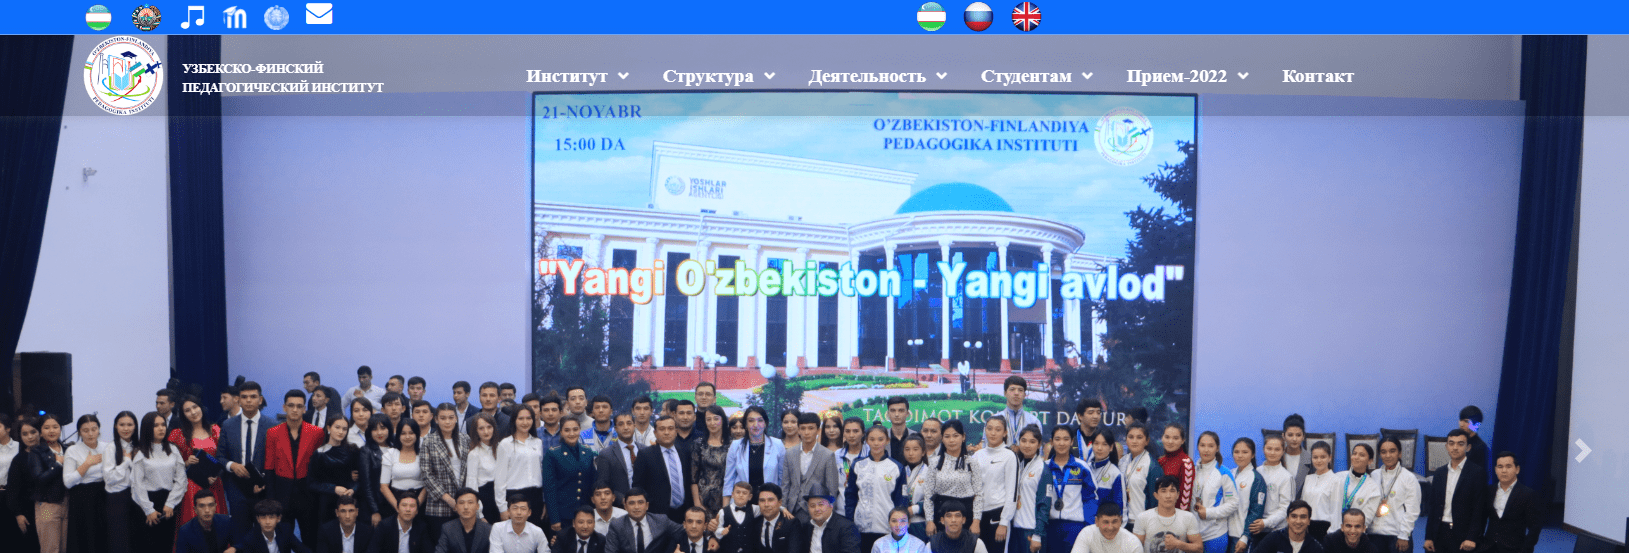 Институт финансов и банковского дела в городе Ташкенте (Uzfi.uz)